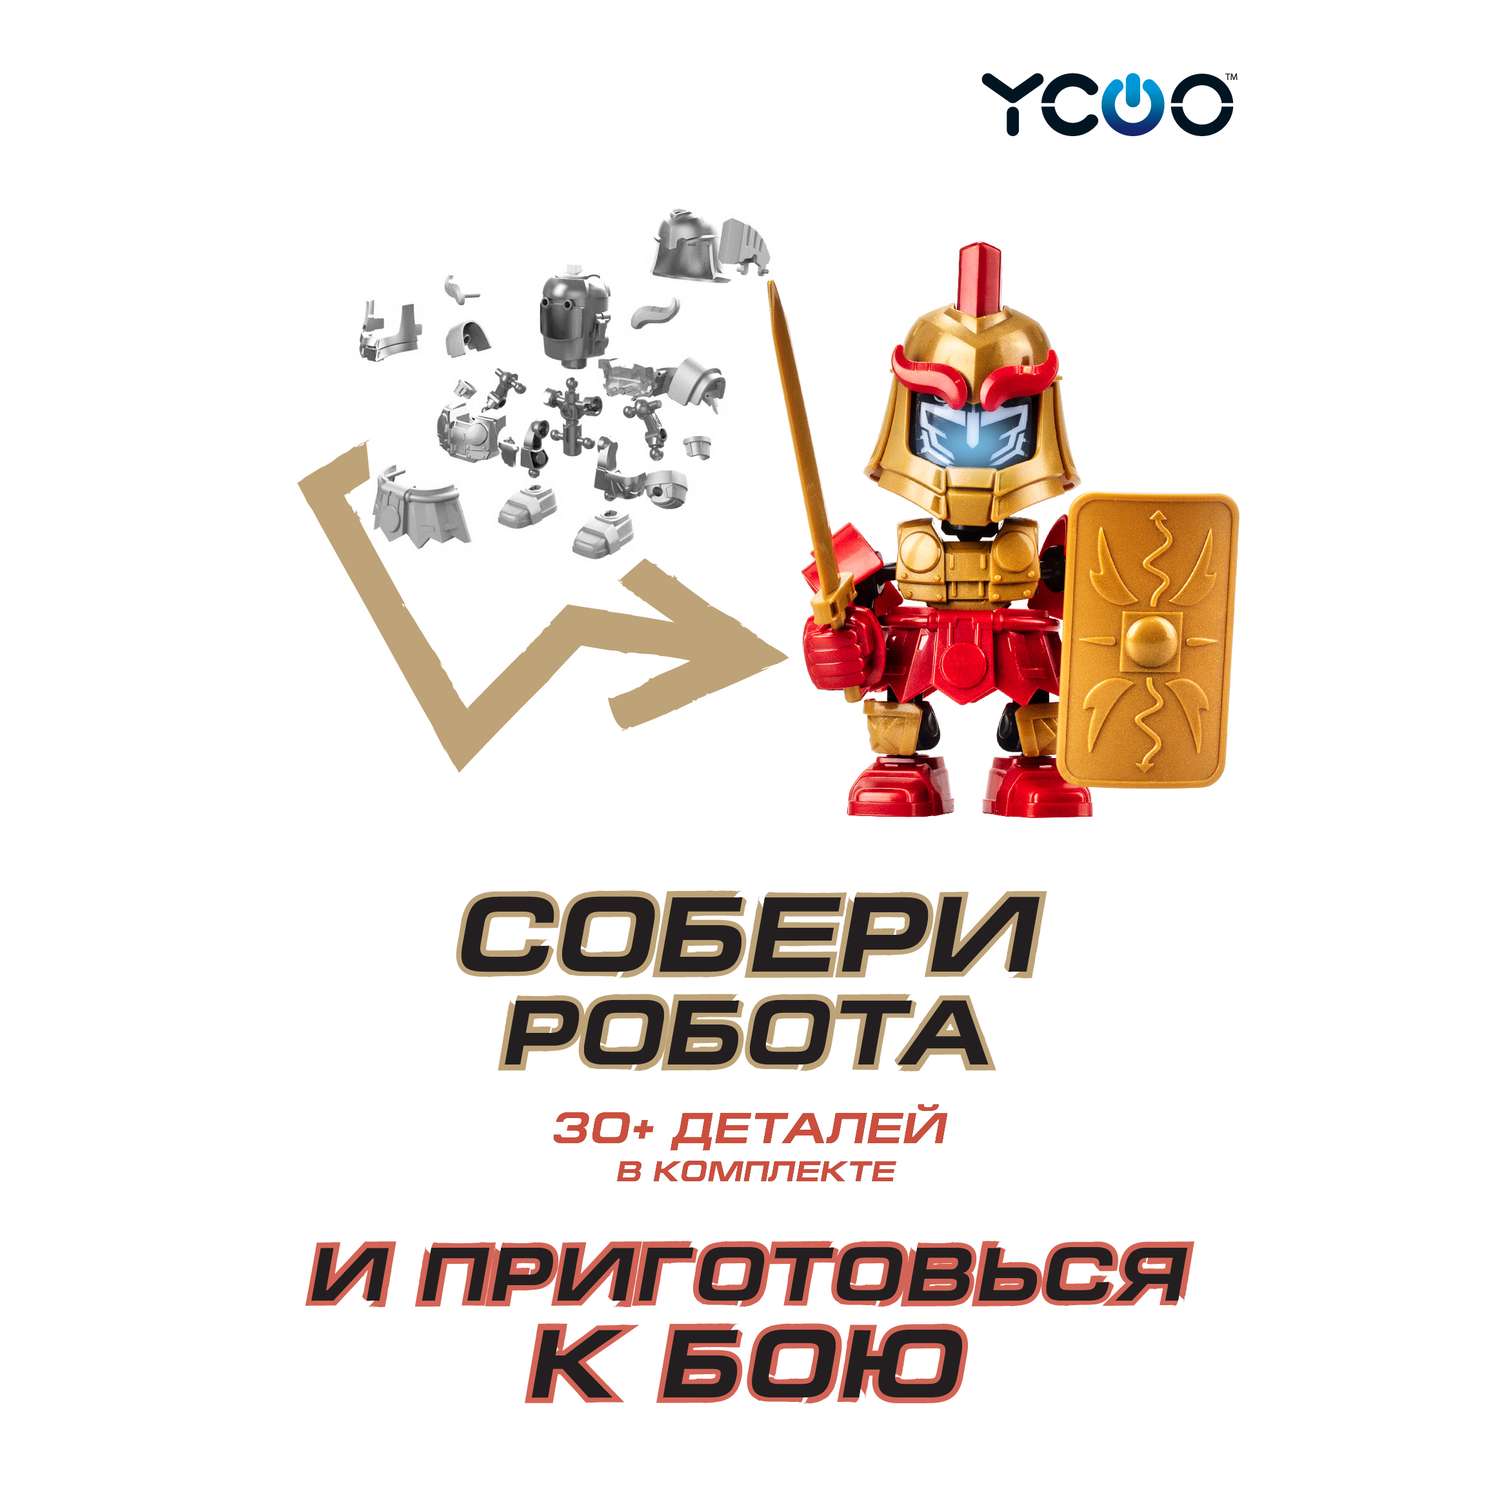 Робот YCOO Боевой одиночный - Легионер - фото 2